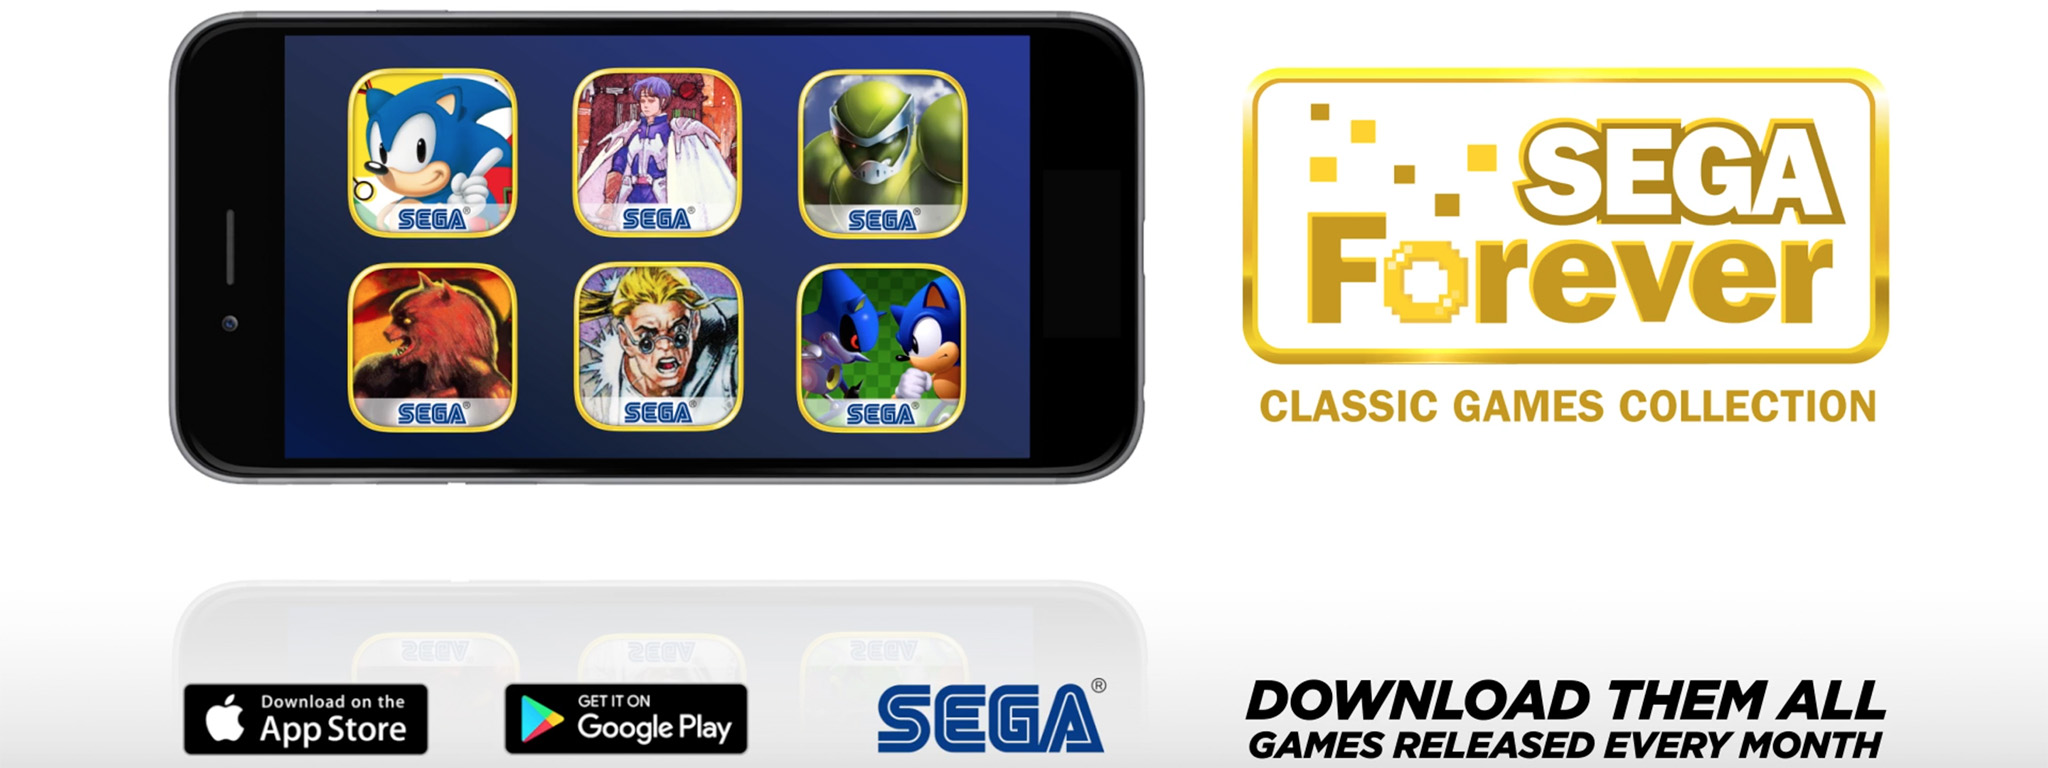 SEGA phát hành một loạt game Retro cho iOS và Android, miễn phí, bổ sung game mới mỗi tháng